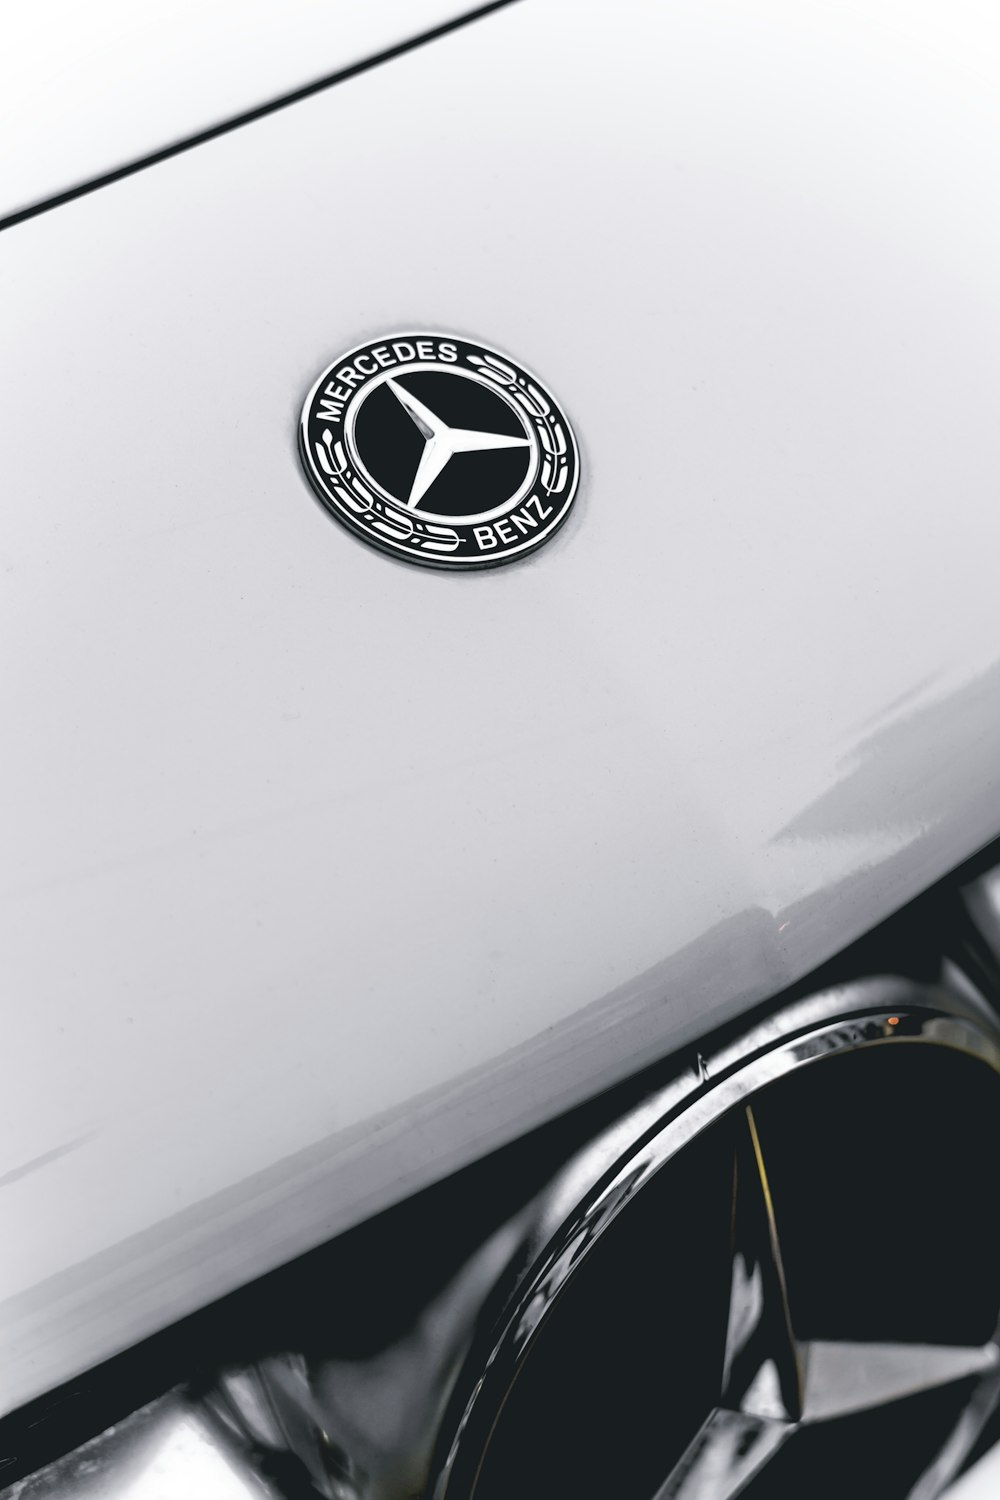 Un primer plano de un emblema de Mercedes en un coche